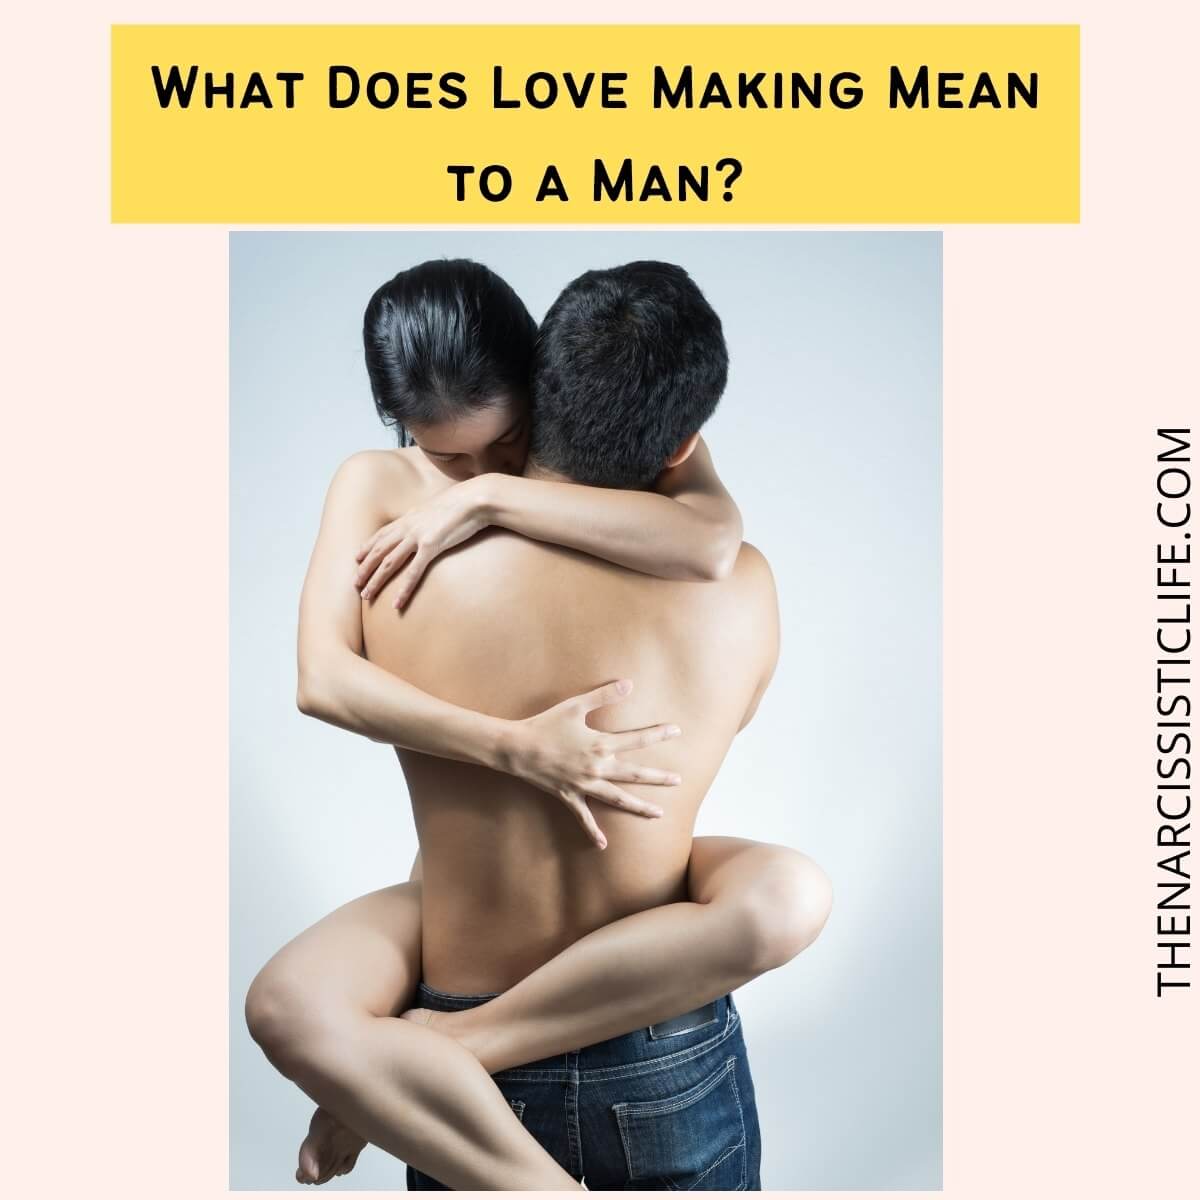 Men making love to men